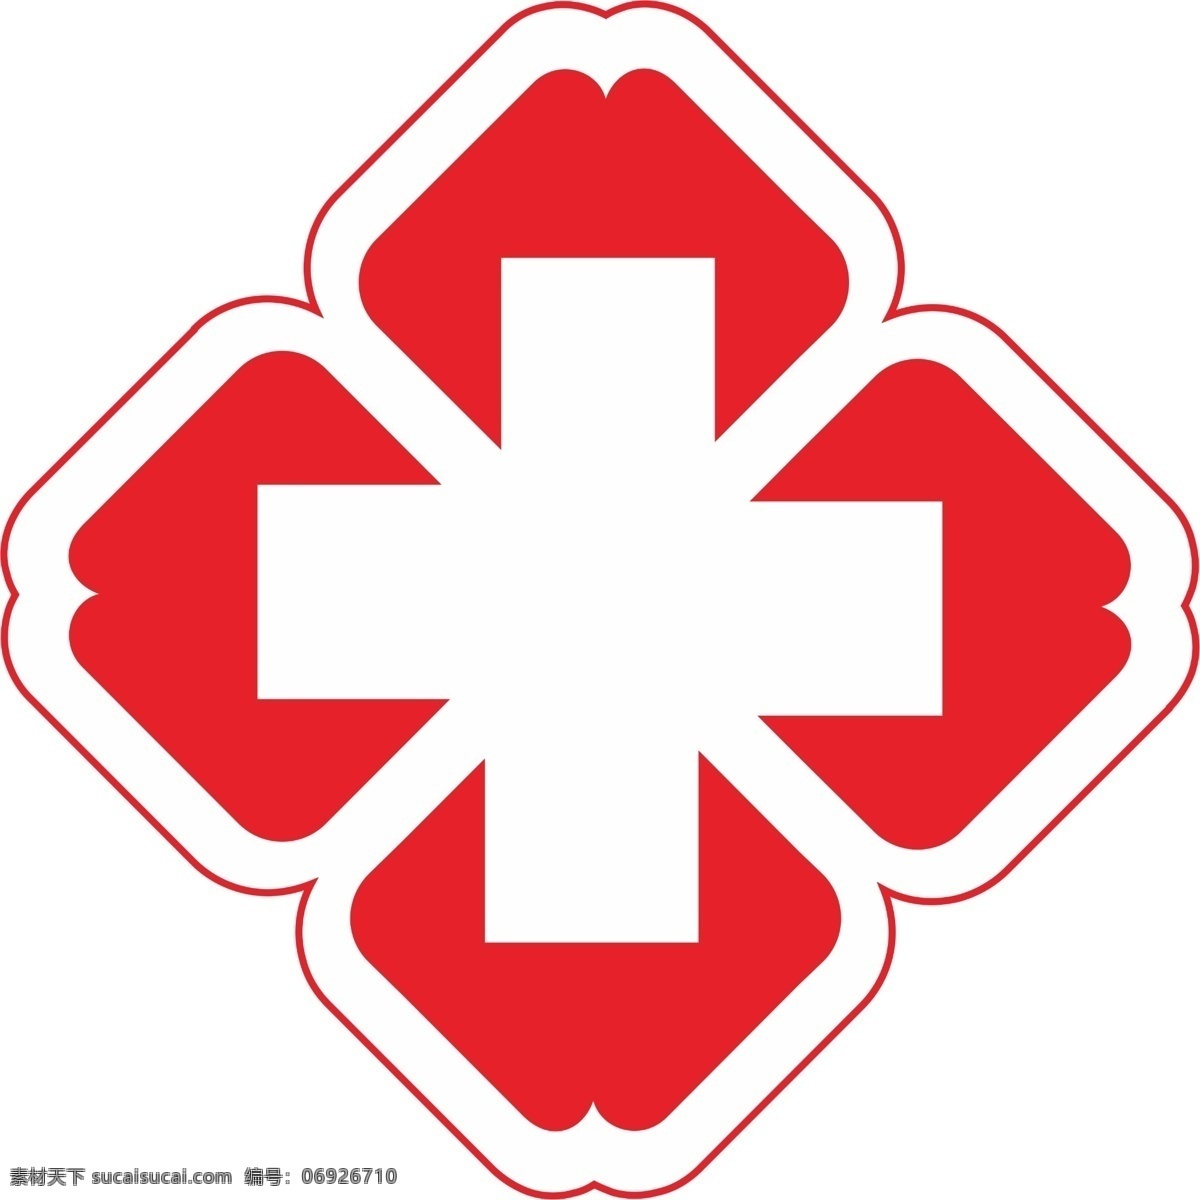 医院标志 医院标识 十字架 医院十字架 医院图标 标志图标 公共标识标志